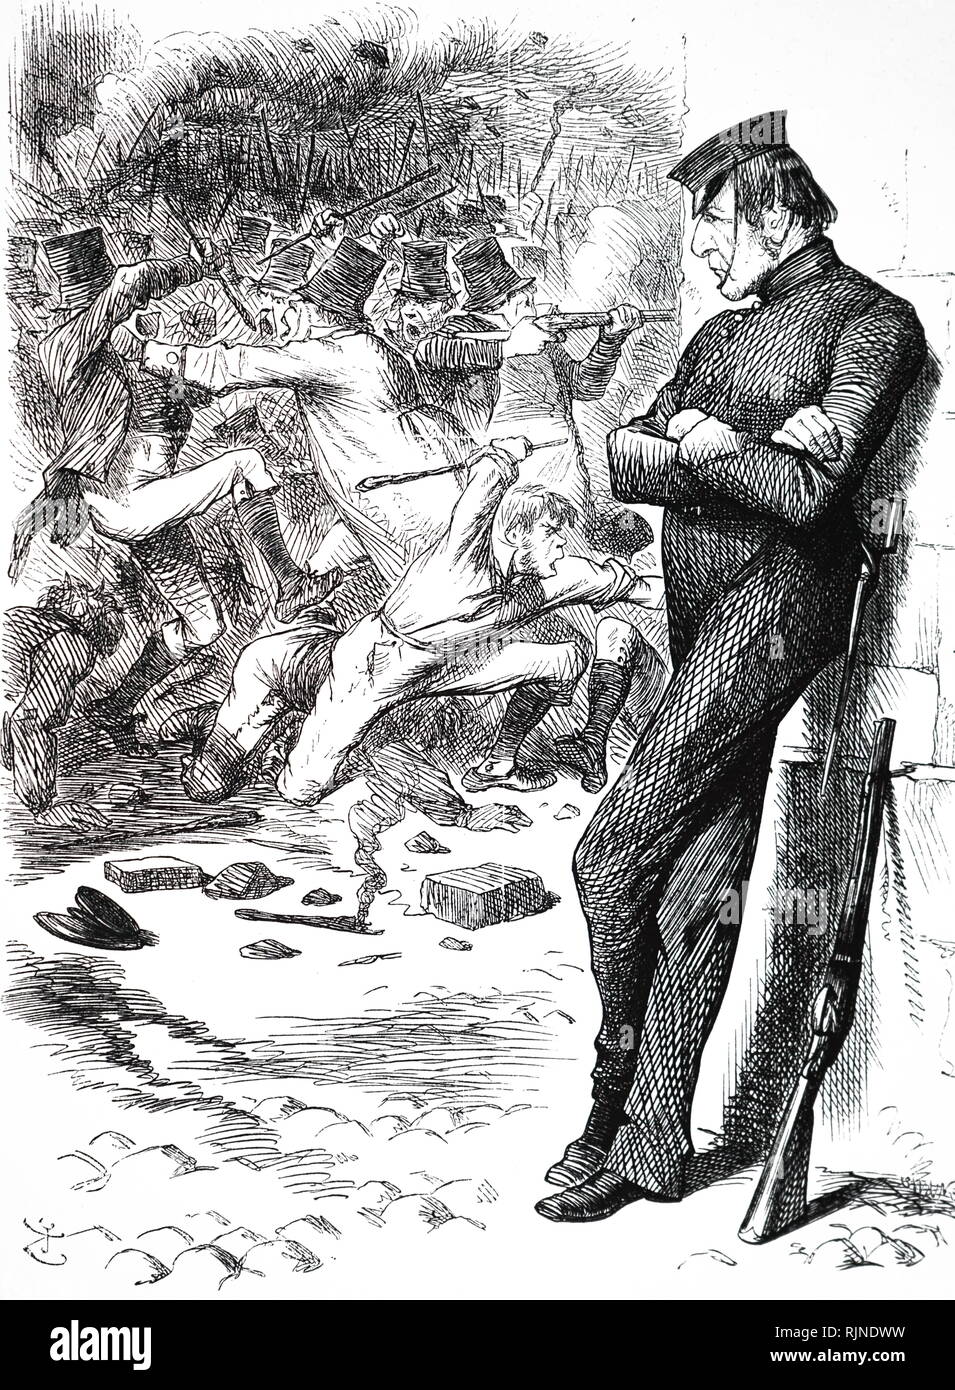 Eine Karikatur, die Premierminister William Gladstone beobachten die Unruhen in Irland, die wartet, um zu intervenieren. 4. April eine neue irische Frieden Bewahrung Gesetz verabschiedet. Illustriert von John Tenniel. Stockfoto